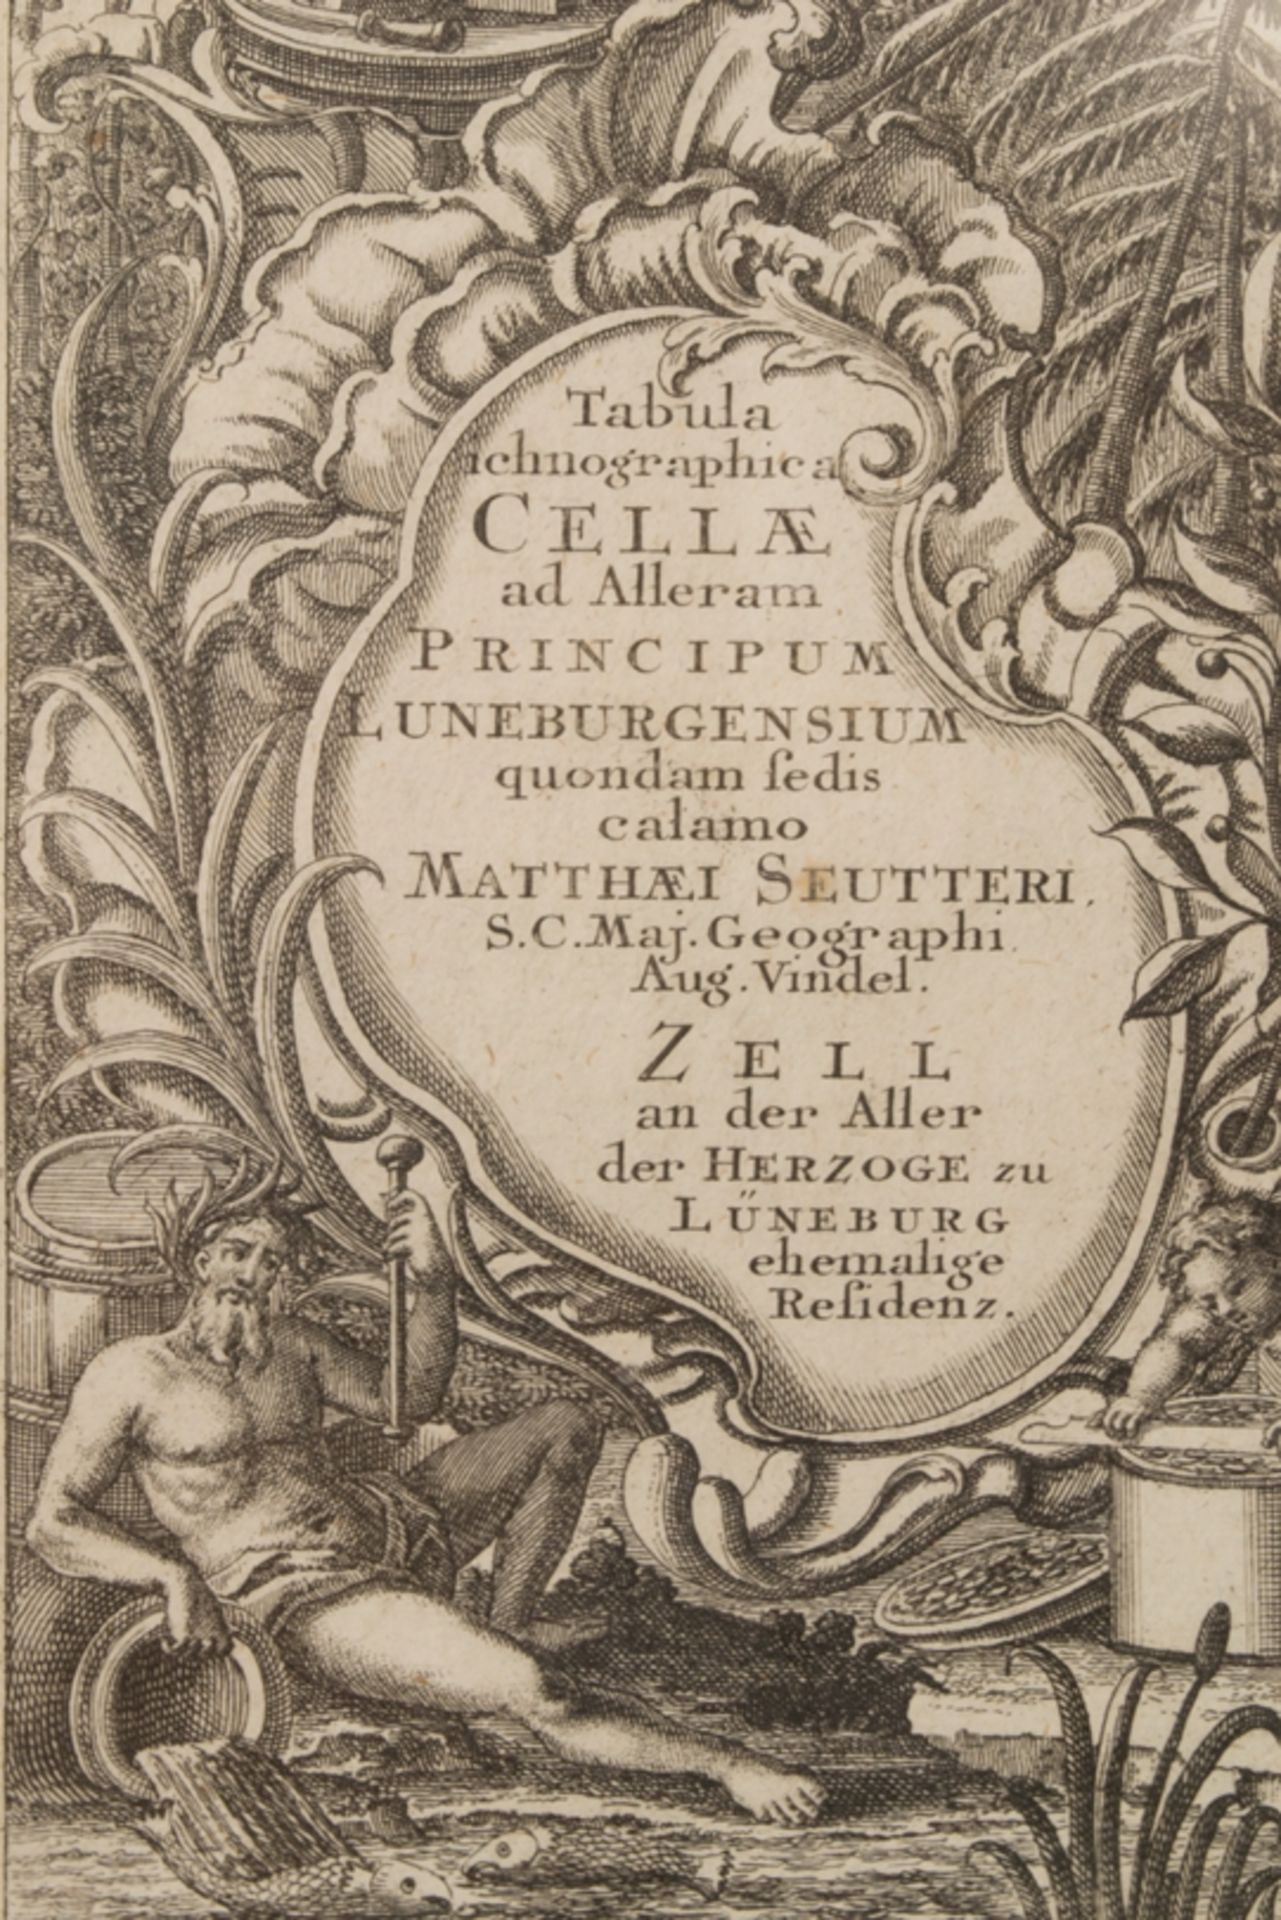 Antike Kupferstichkarte bez. "TABULA ICHNOGRAPHIE CELLAE am Allerarm...". 18. Jhd, handkolorierter - Image 7 of 8